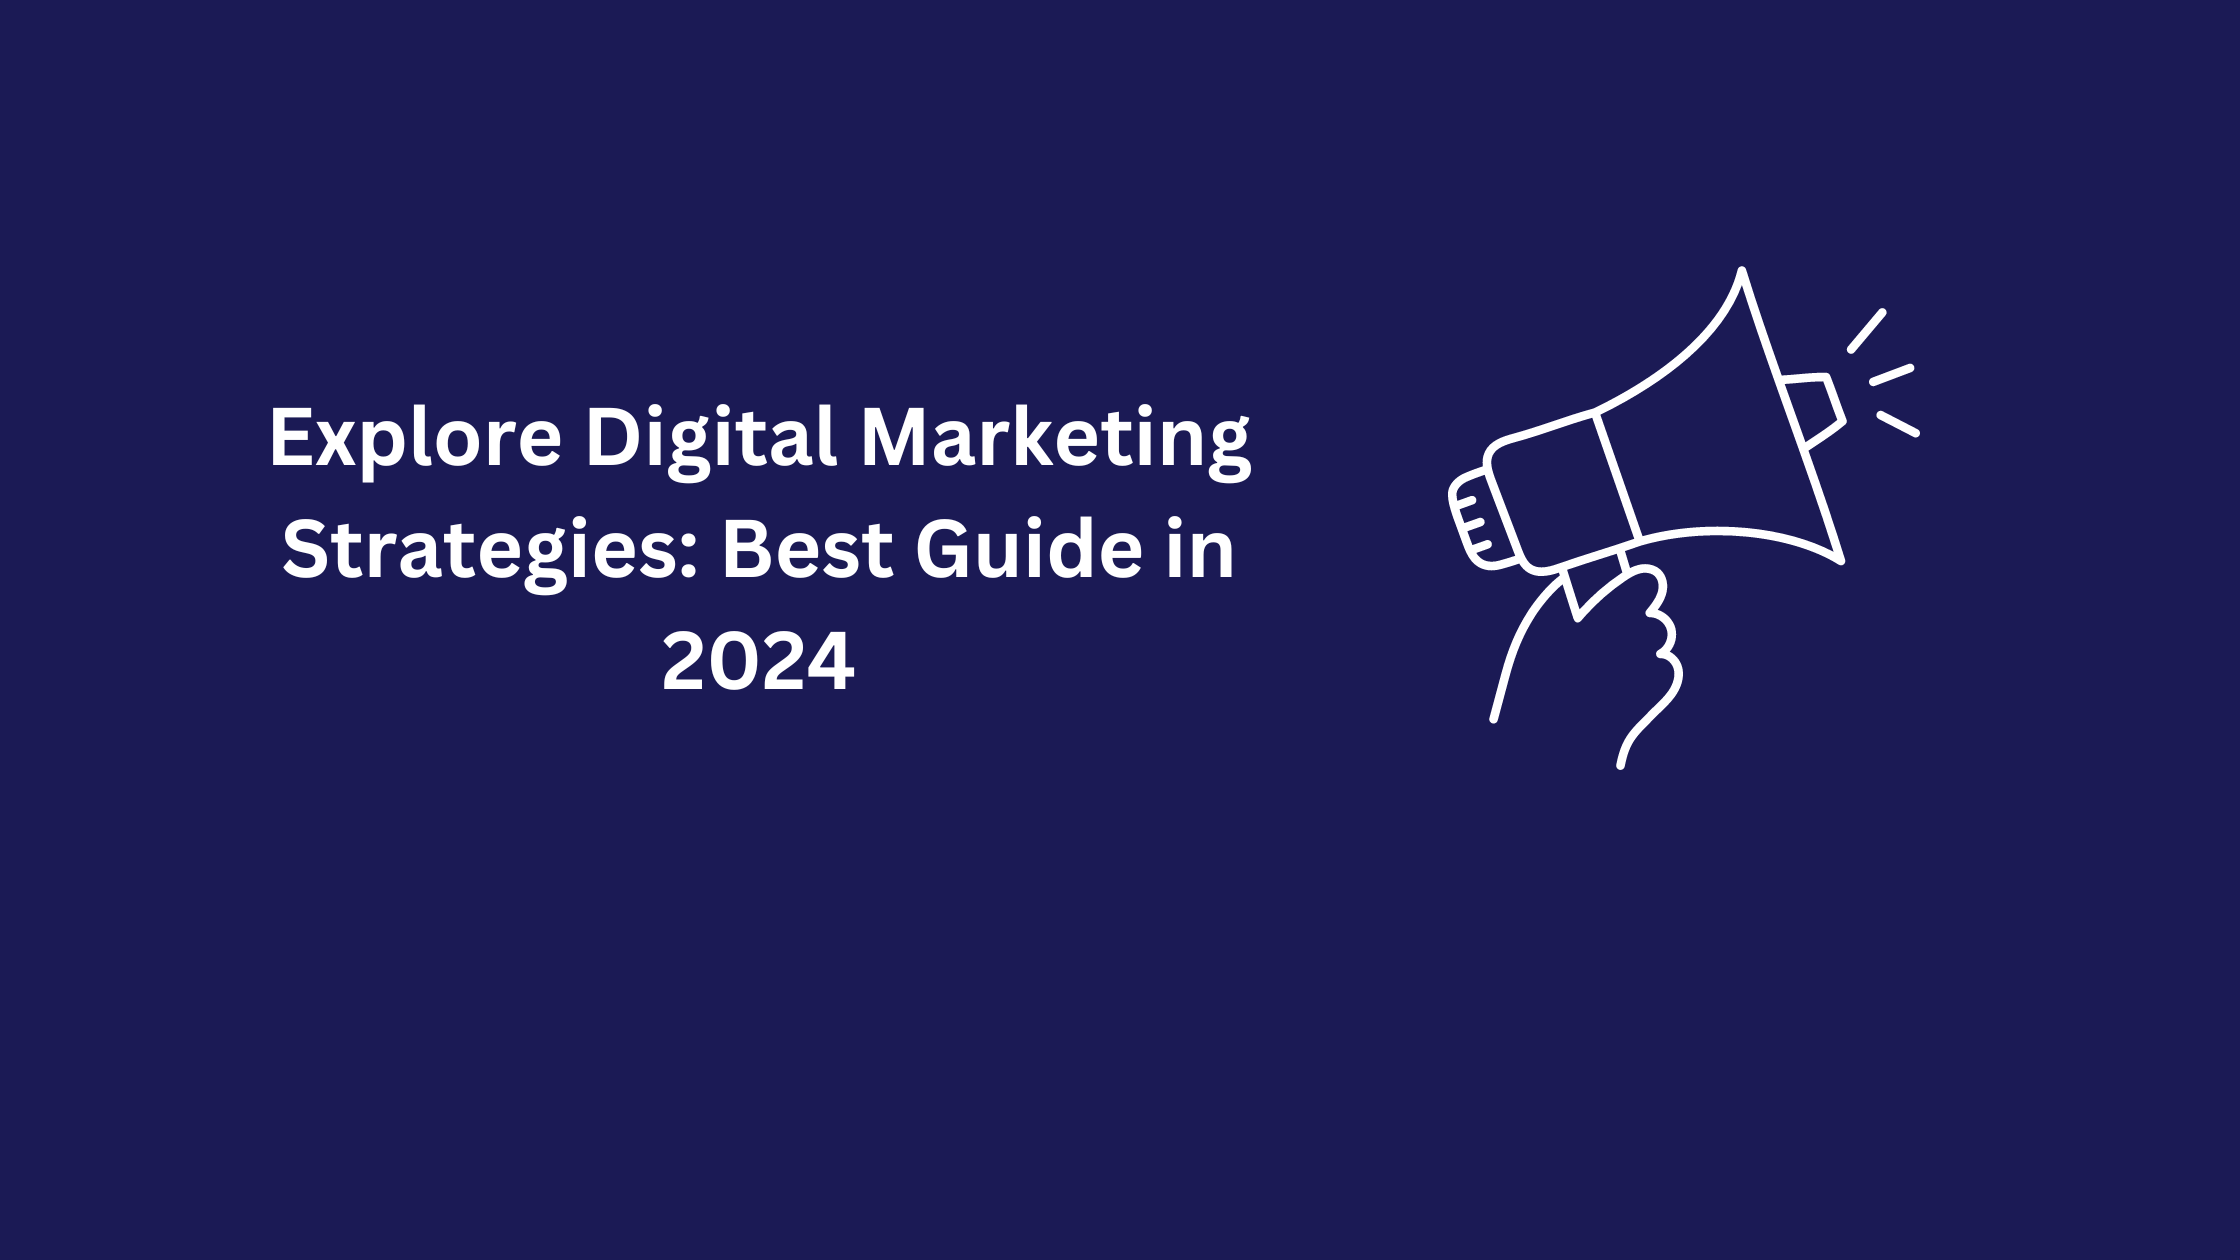 Explore Digital Marketing Strategies: Best Guide in 2024